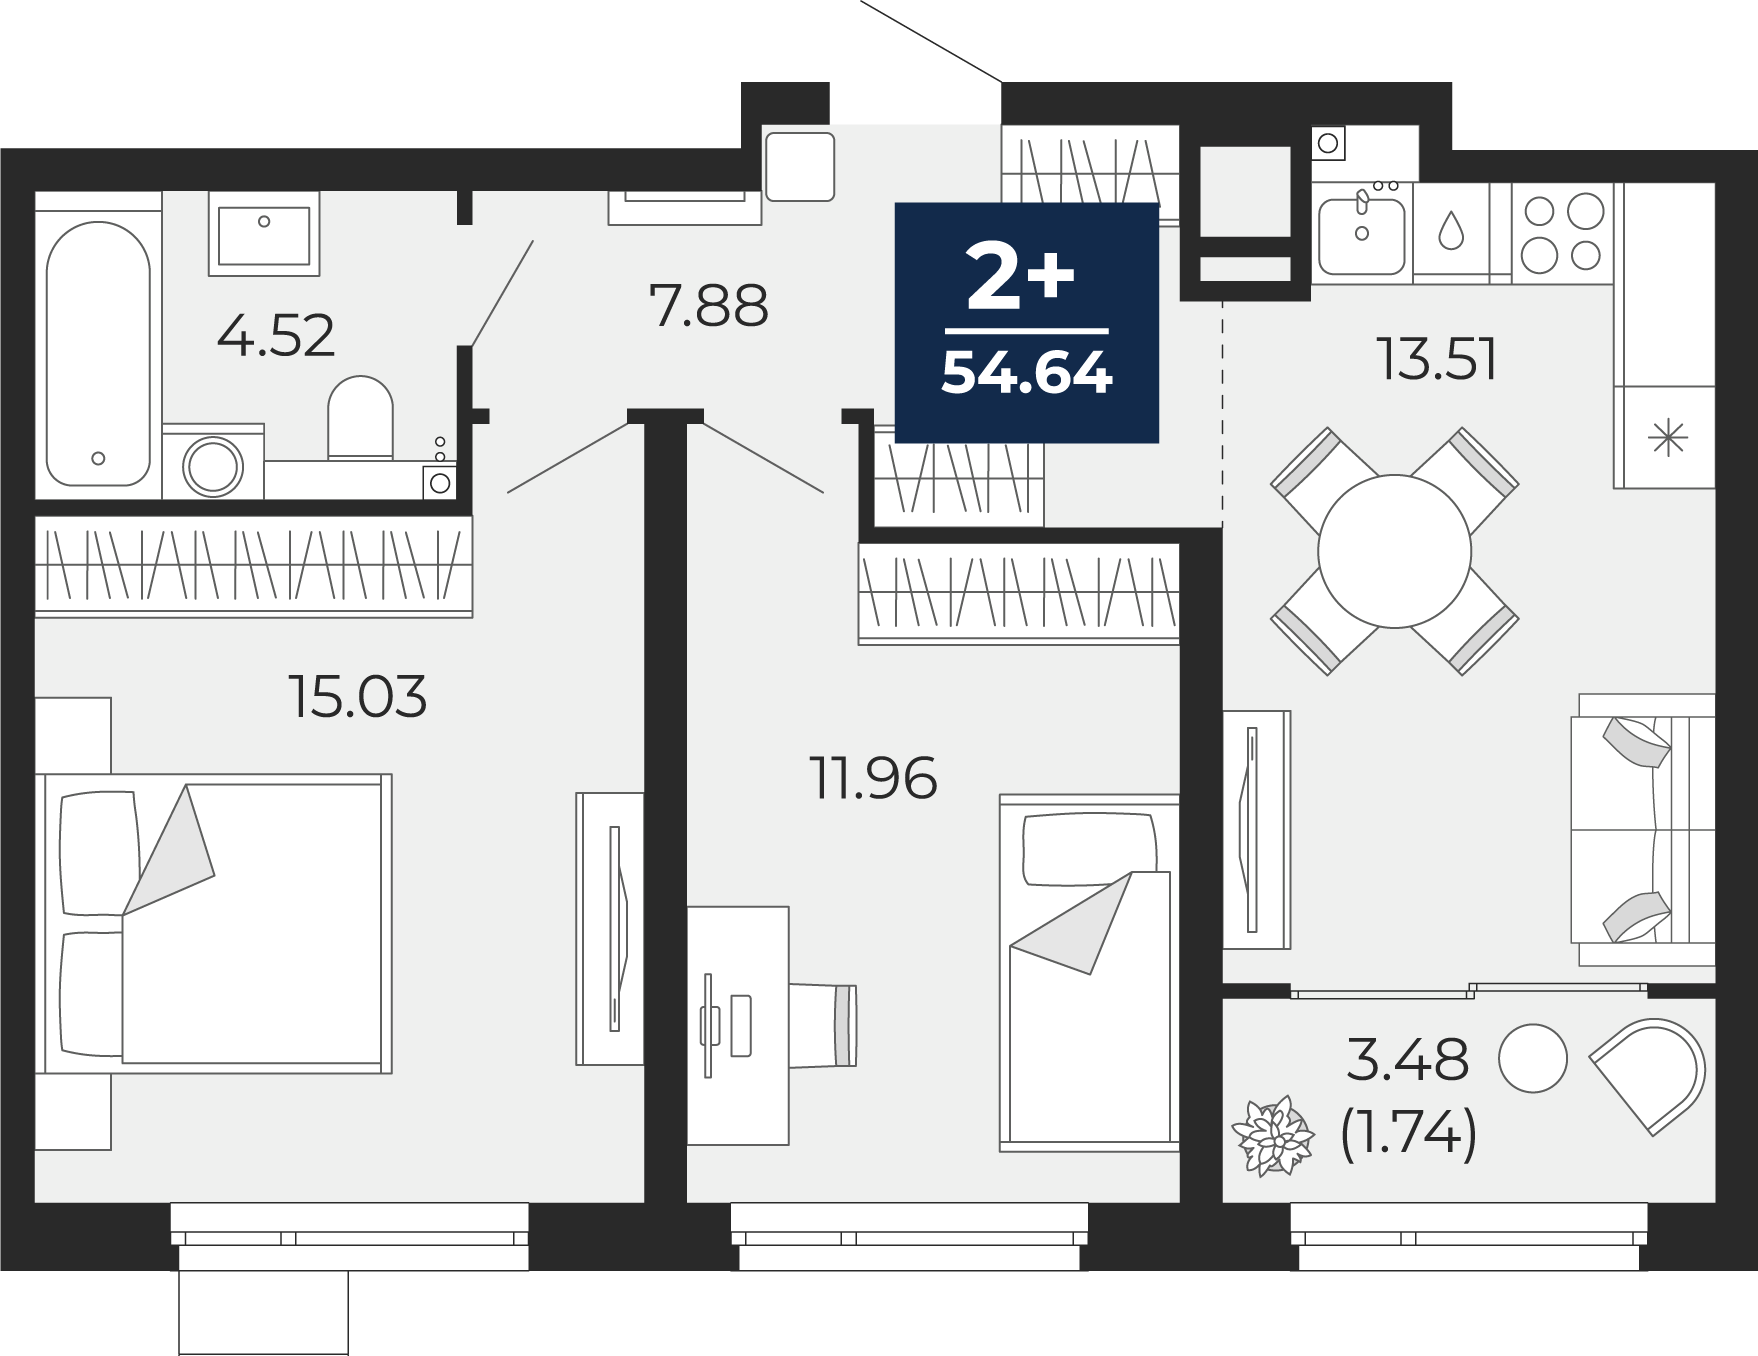 Квартира № 277, 2-комнатная, 54.64 кв. м, 17 этаж